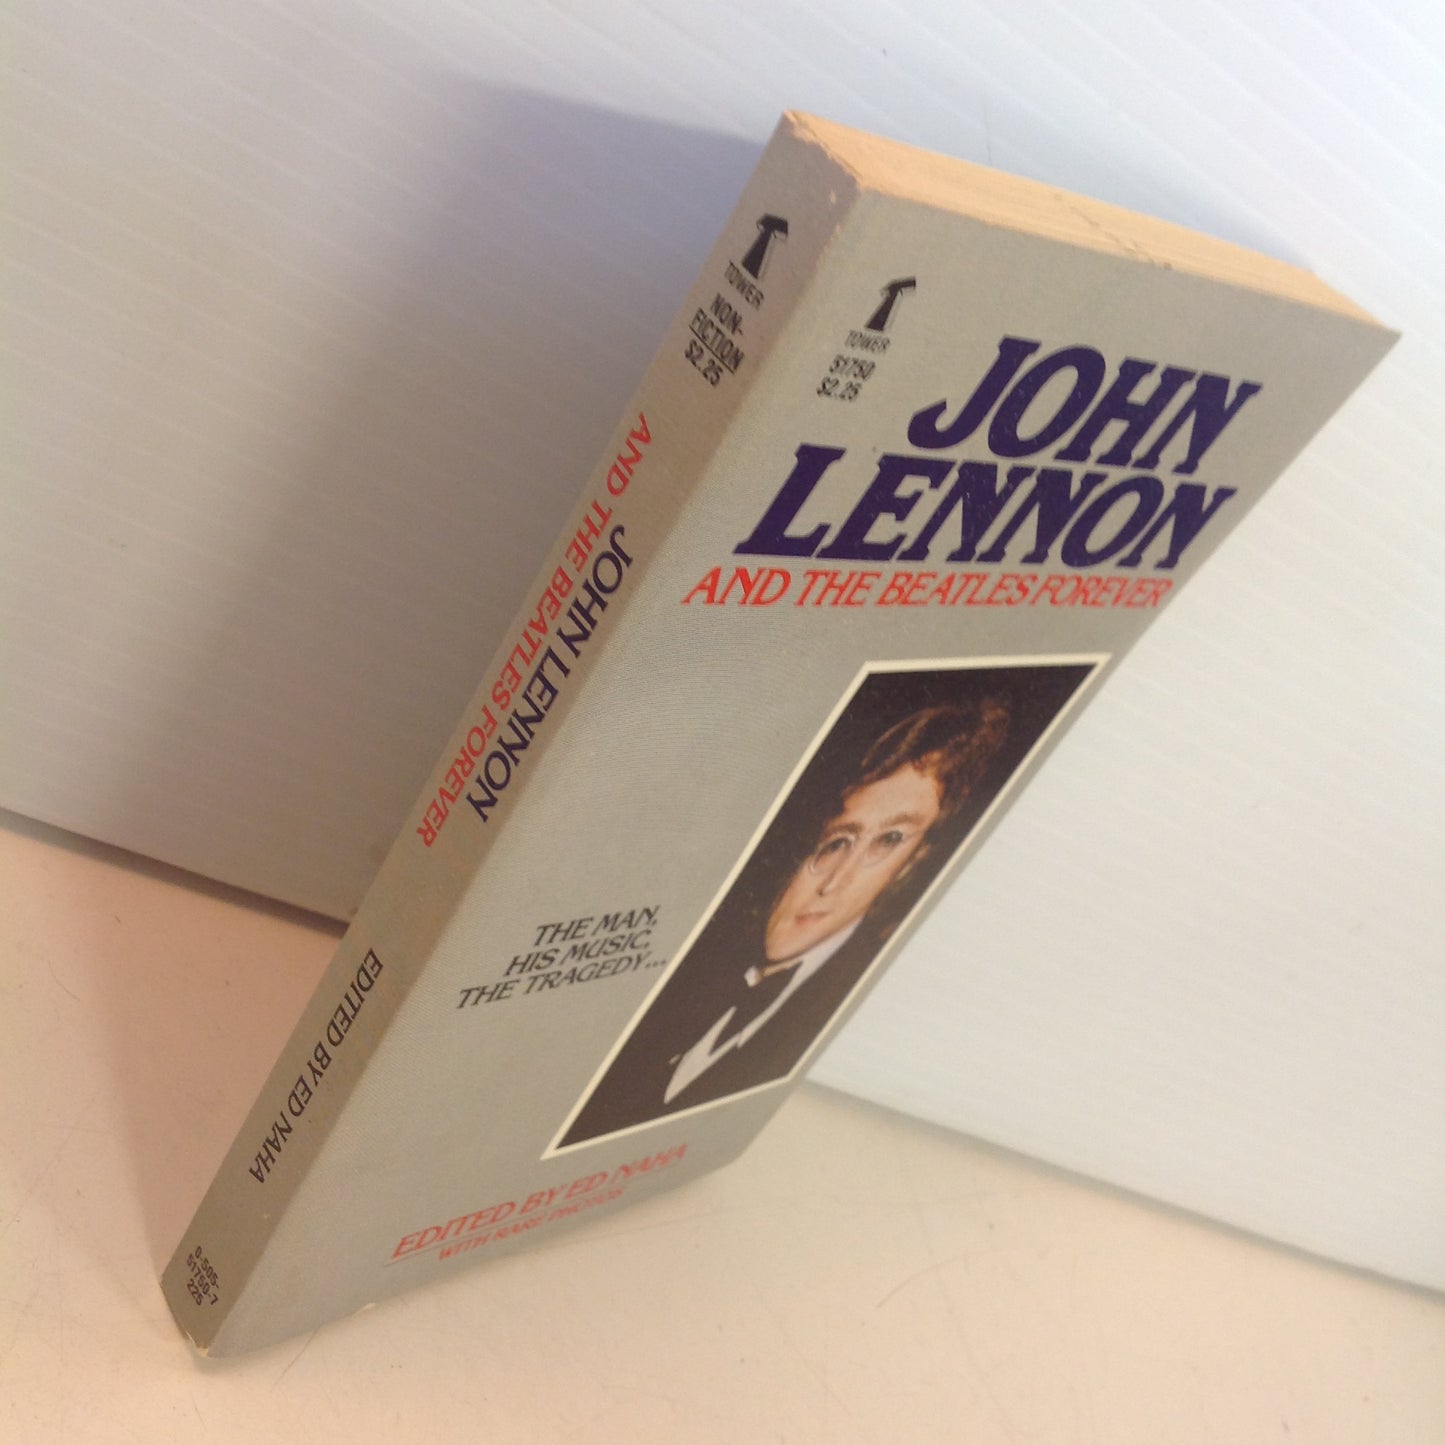 Vintage Tower Books John Lennon and the Beatles Forever Mass Market Paperback